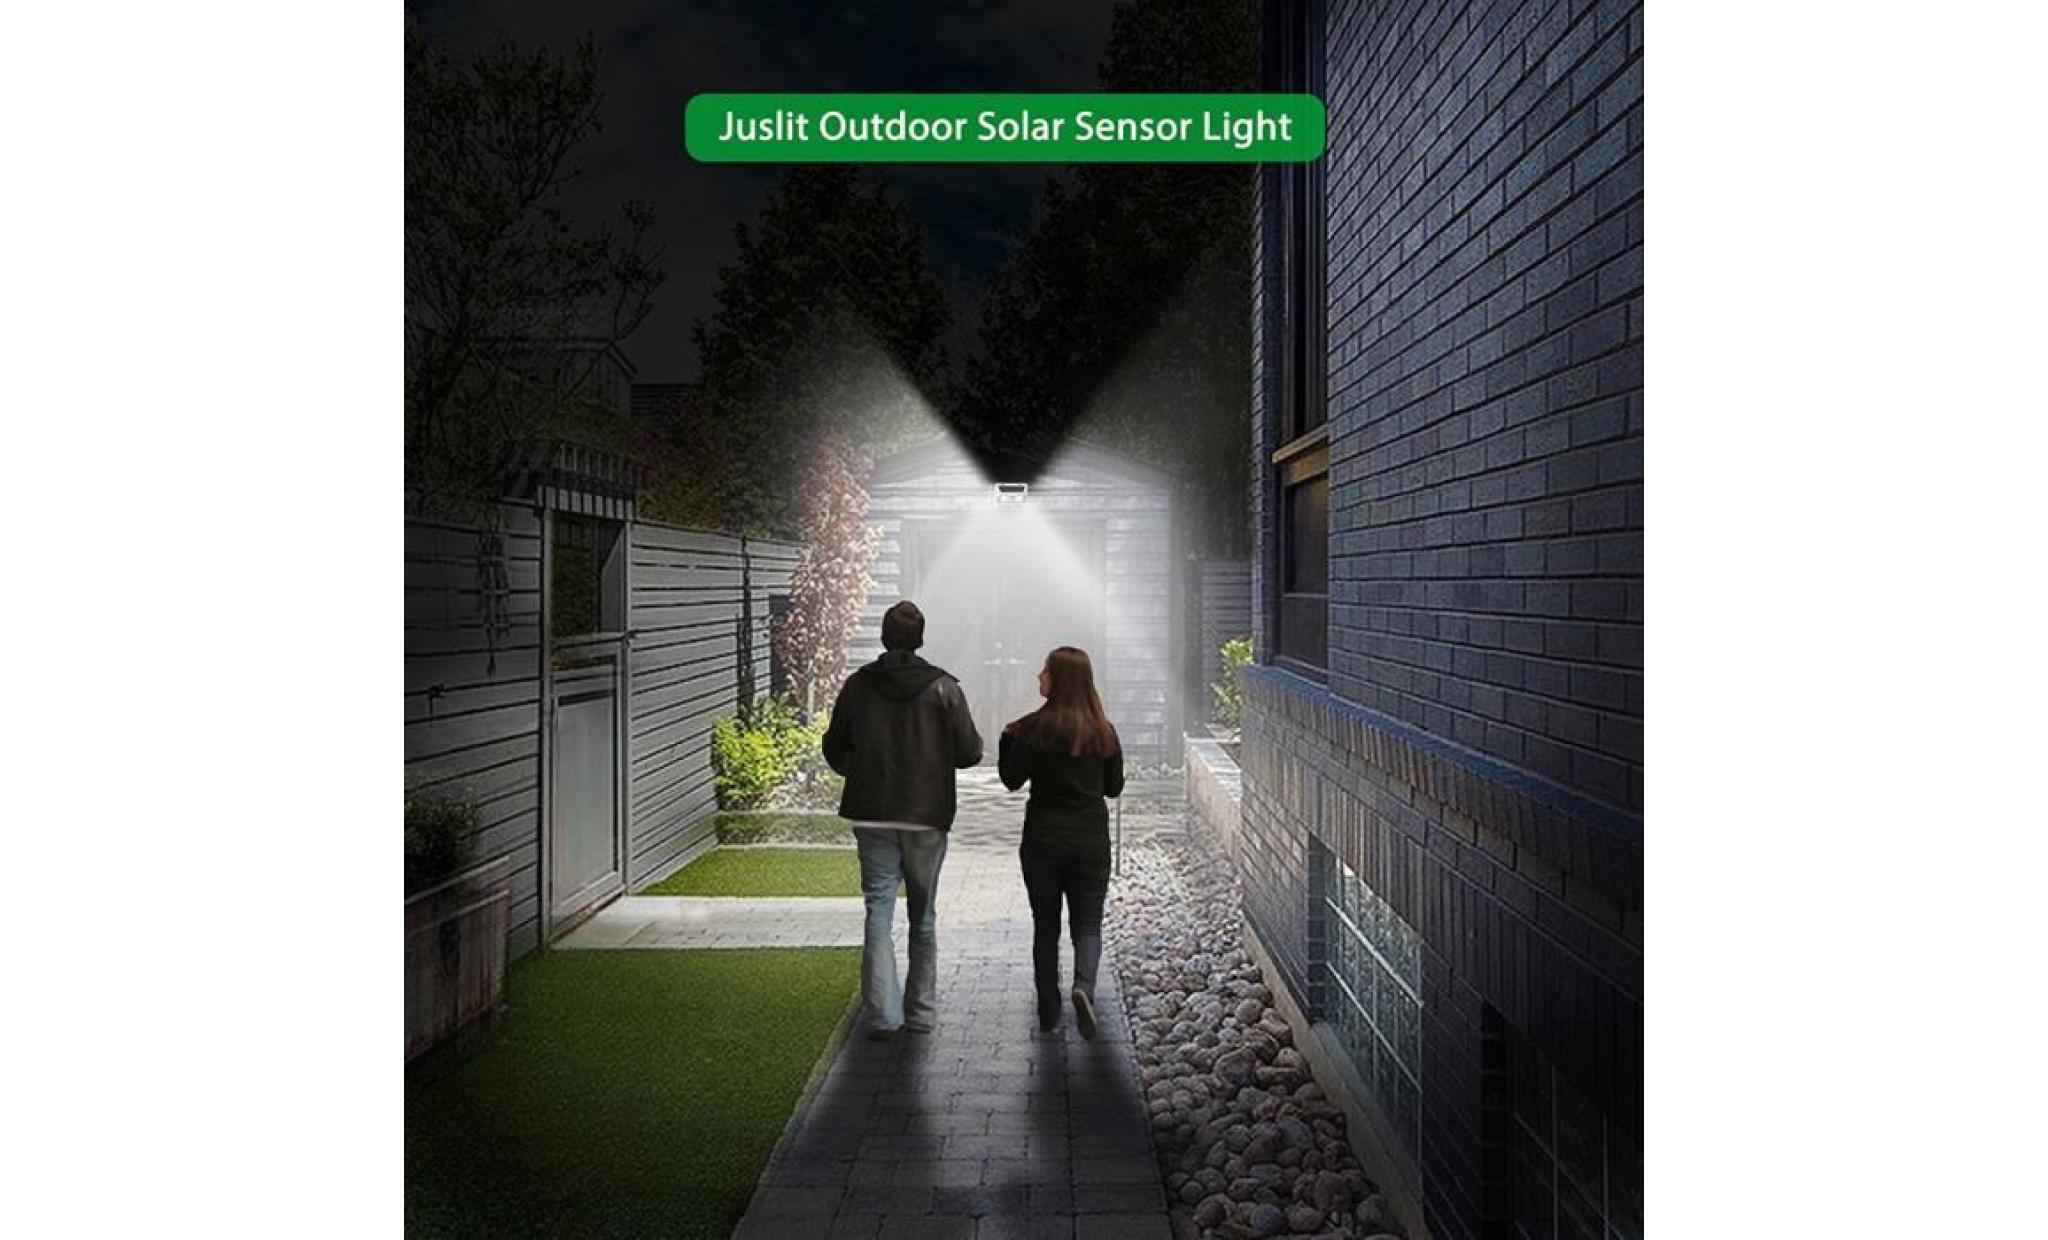 95 smd cob énergie solaire lumière pir motion sensor garden street lampe extérieure li498@ pas cher